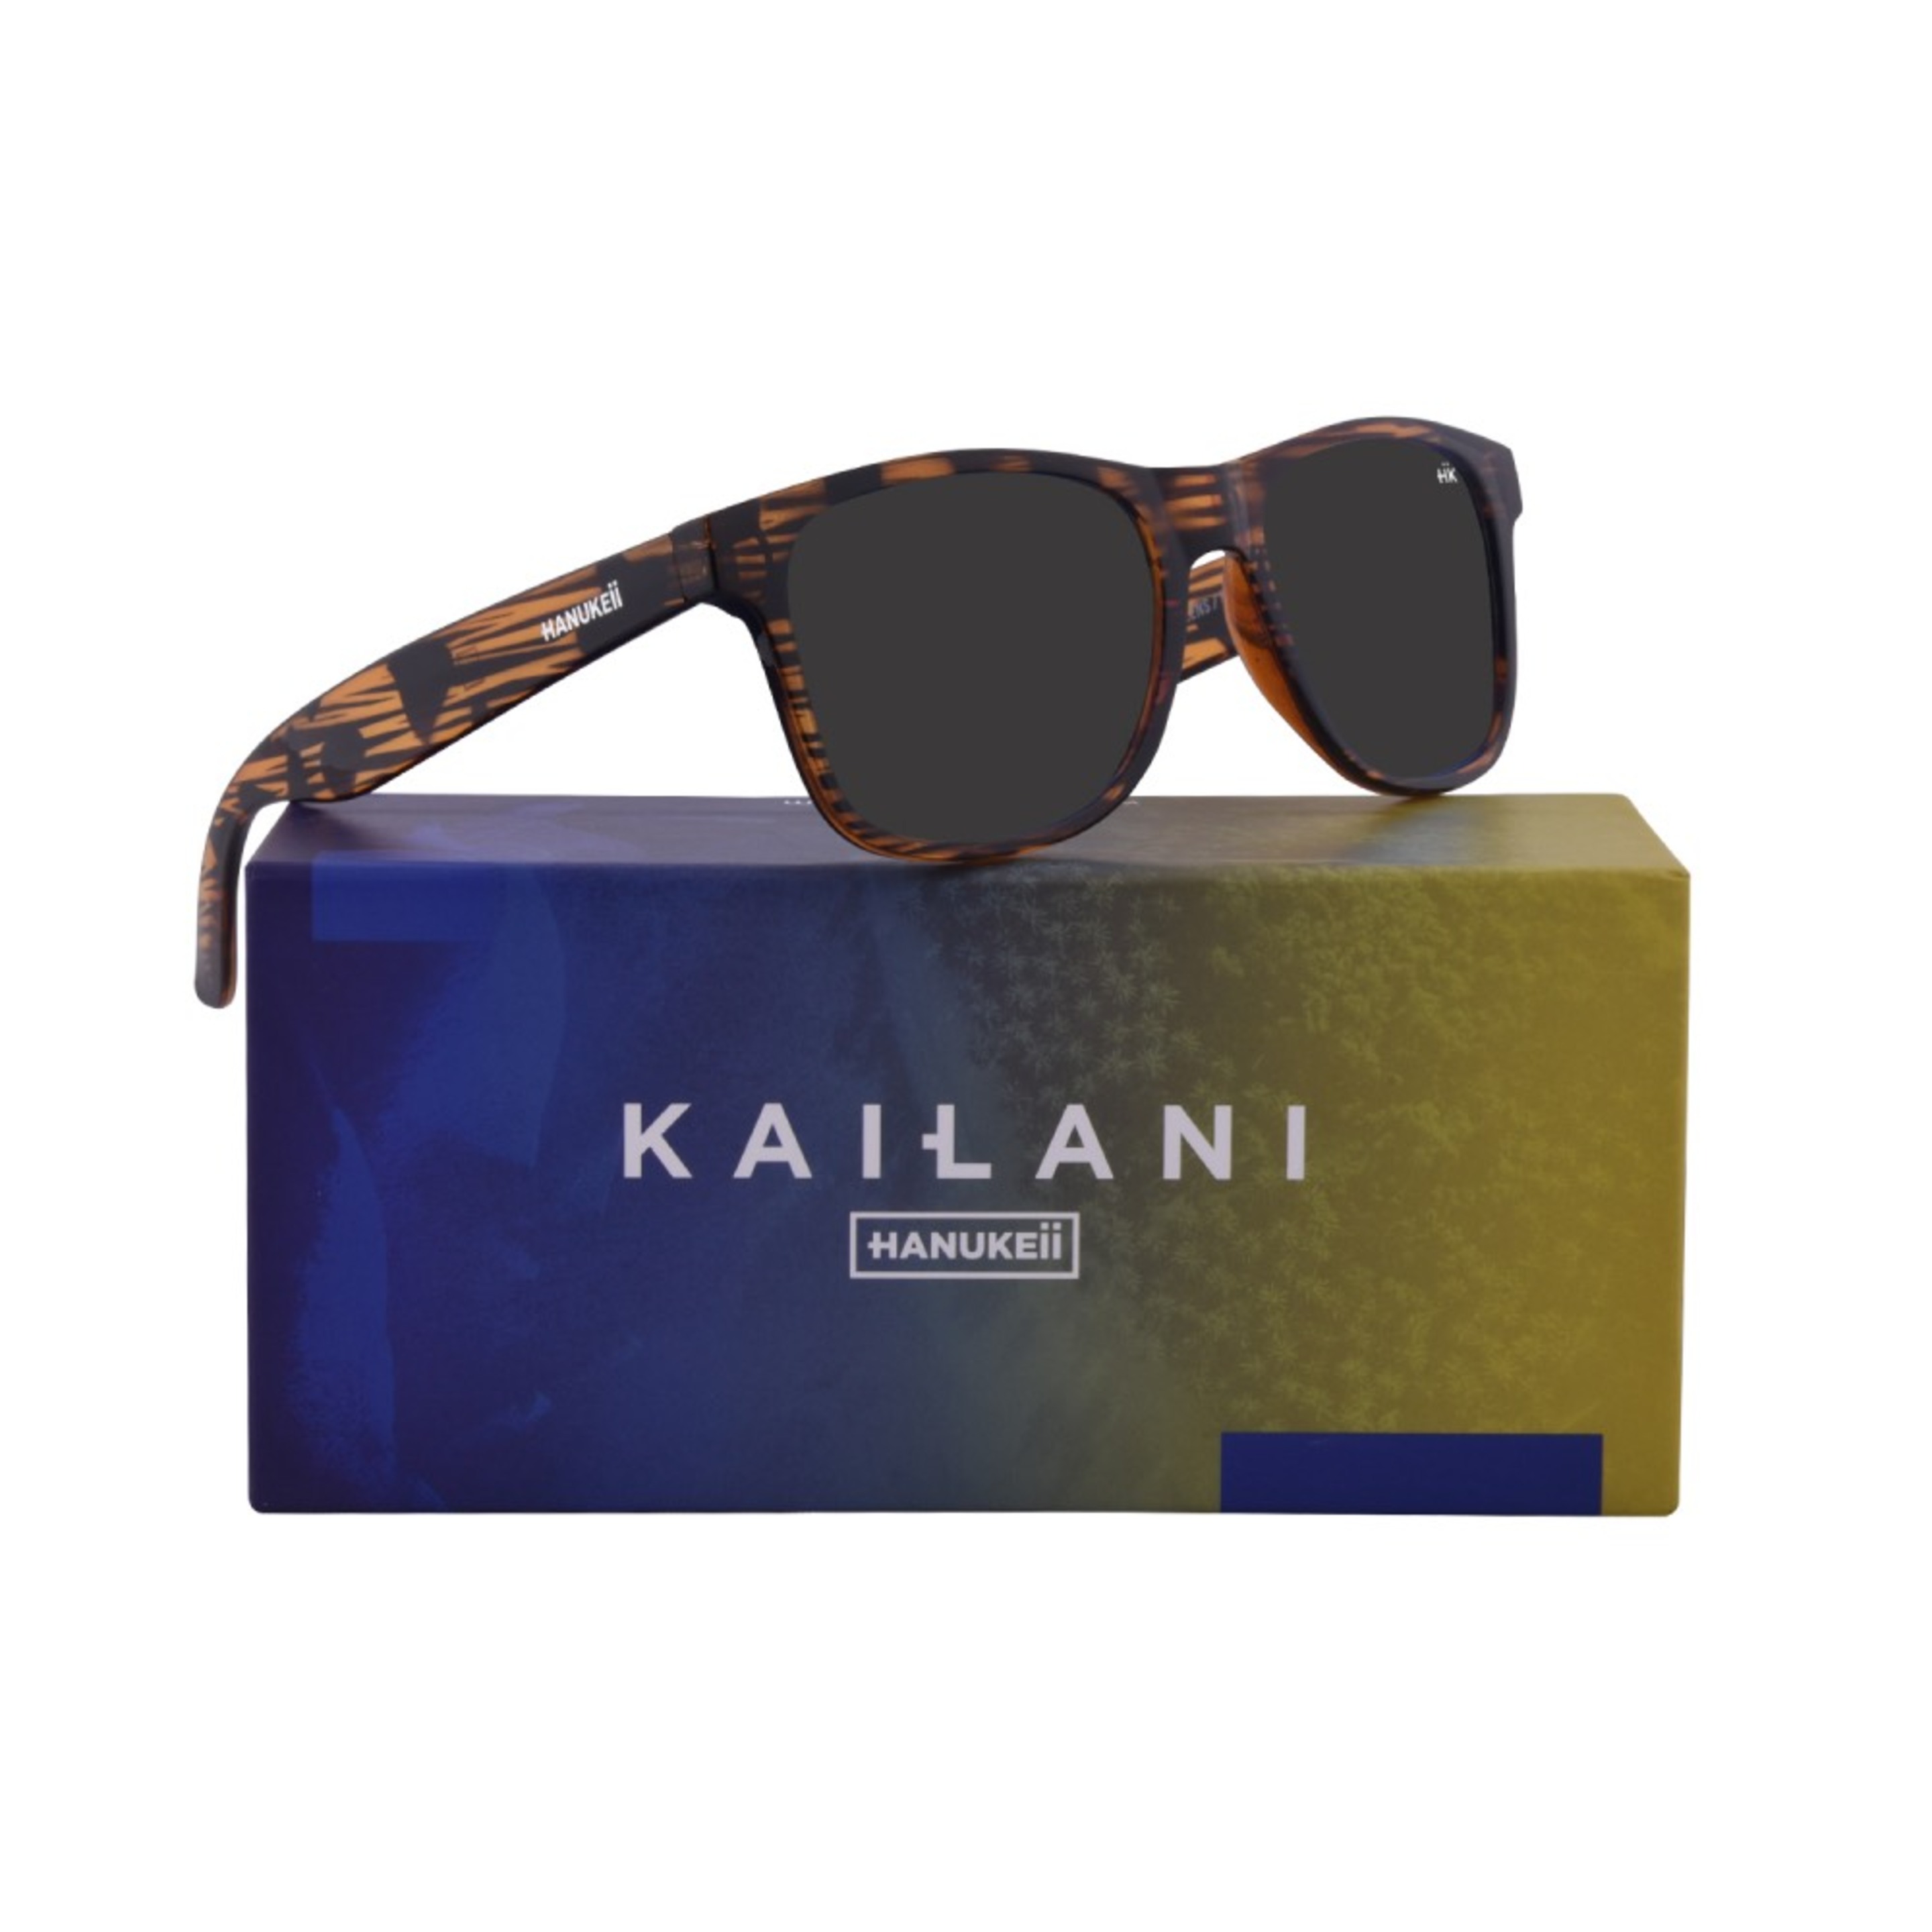 Hanukeii Gafas De Sol Hombre Y Mujer Polarizadas Kailani